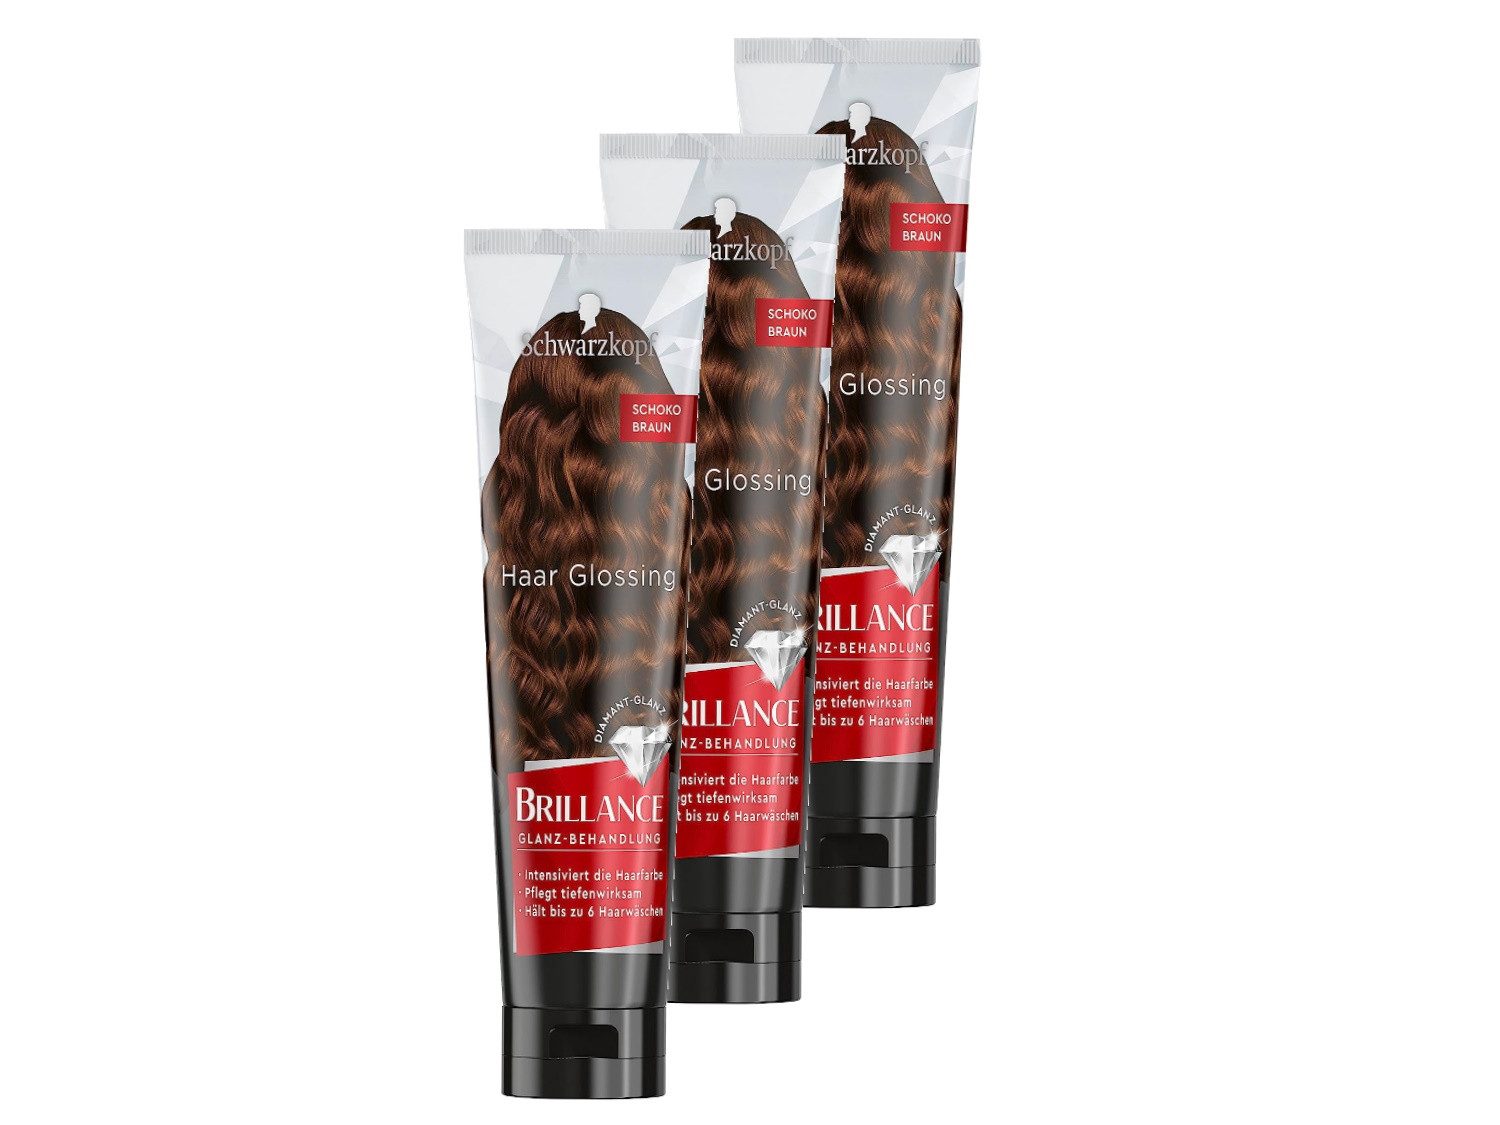 Schwarzkopf Haarfarbe BRILLANCE Glanz-Behandlung Haar Glossing Schoko Braun (3 x 150 ml), Spar-Pack, 3-tlg., pflegt und intensiviert die Haarfarbe, hält bis zu 6 Haarwäschen